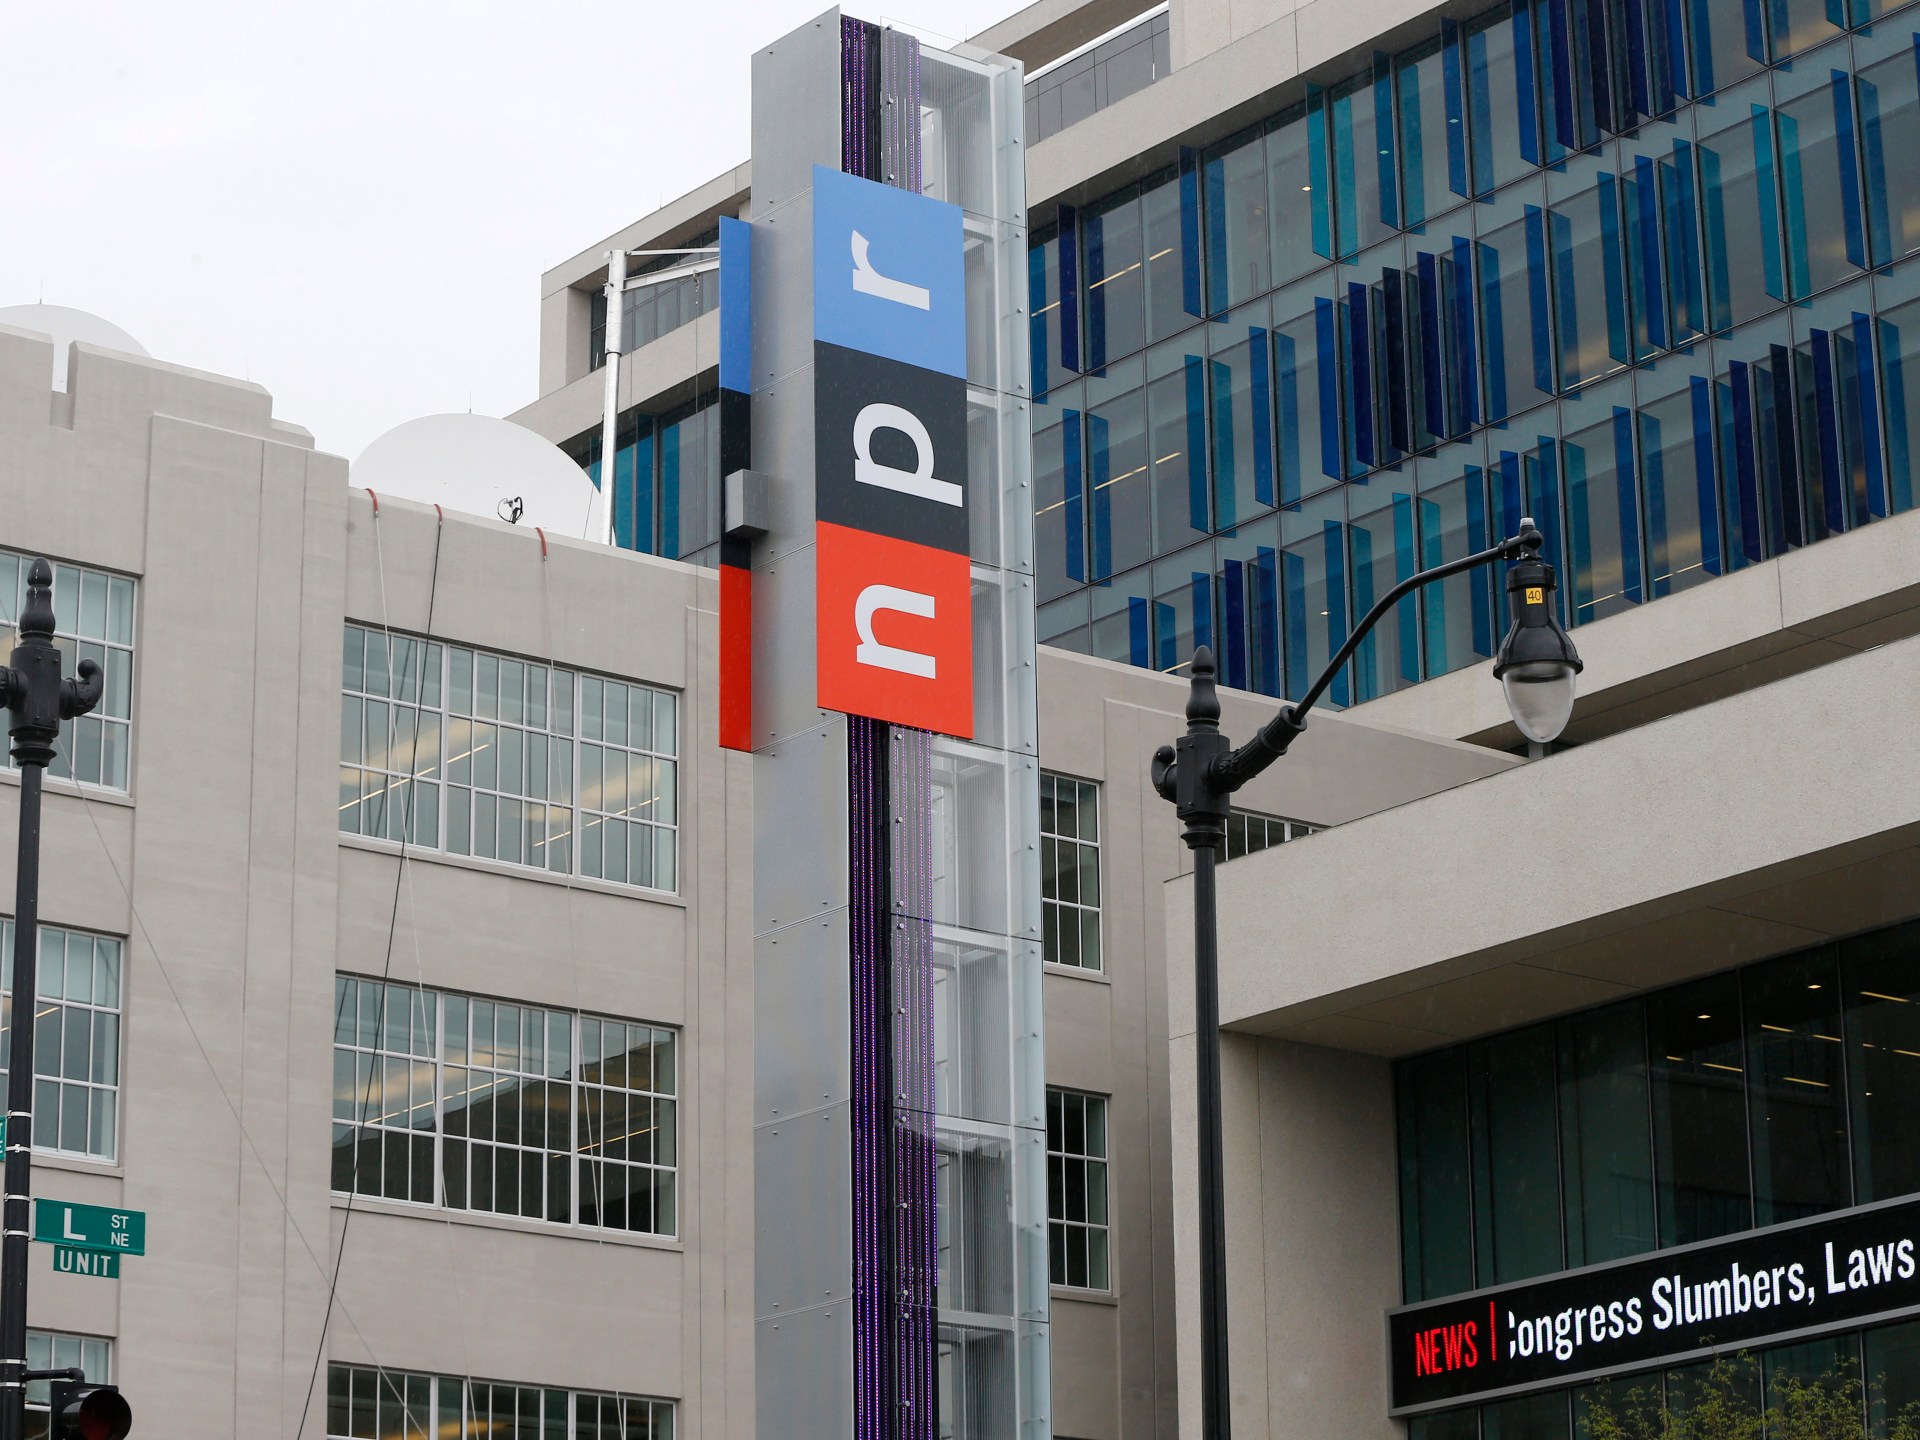 Le rédacteur en chef de NPR démissionne après avoir accusé le média américain de partialité libérale |  Actualités des médias